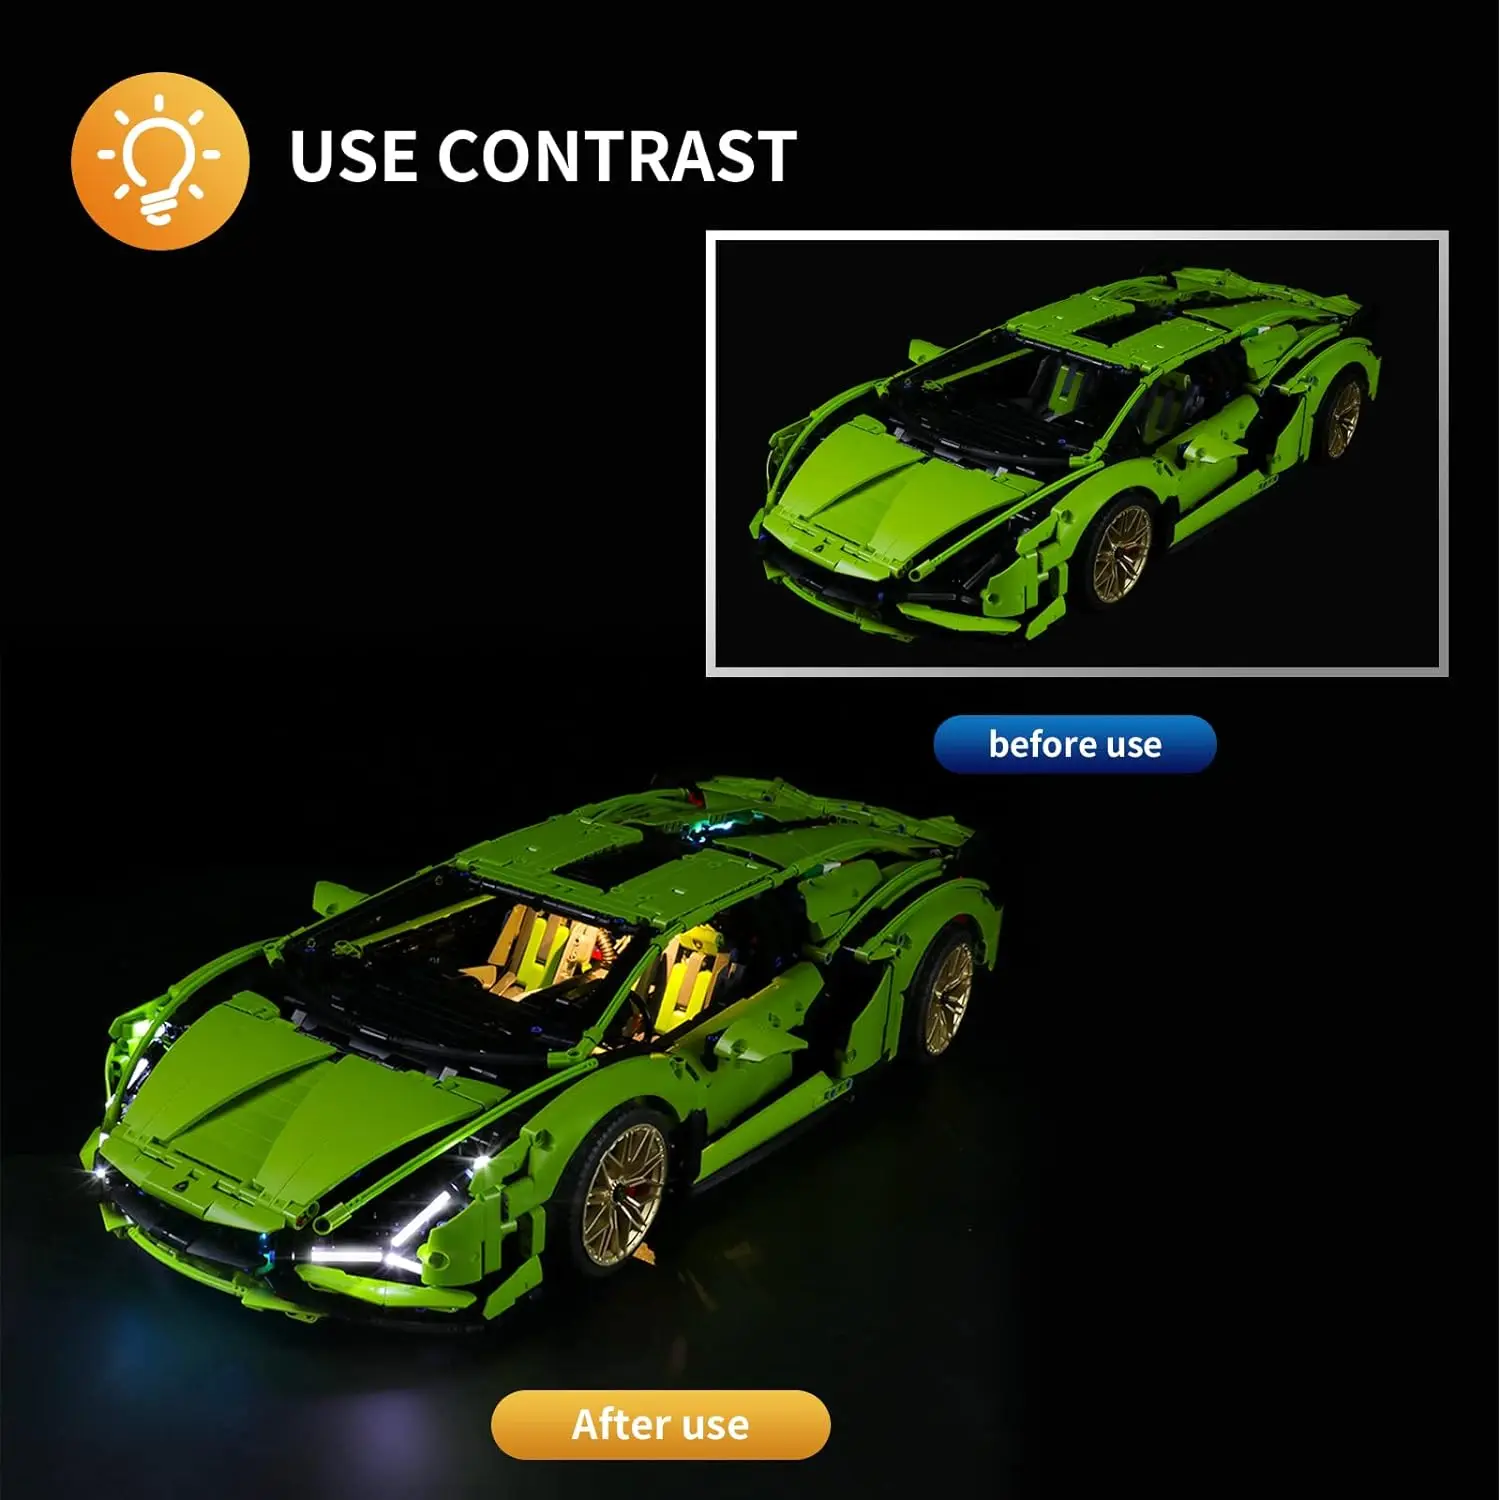 LEGO® Lamborghini Sian FKP 37 42115 Light Kit – Light My Bricks USA